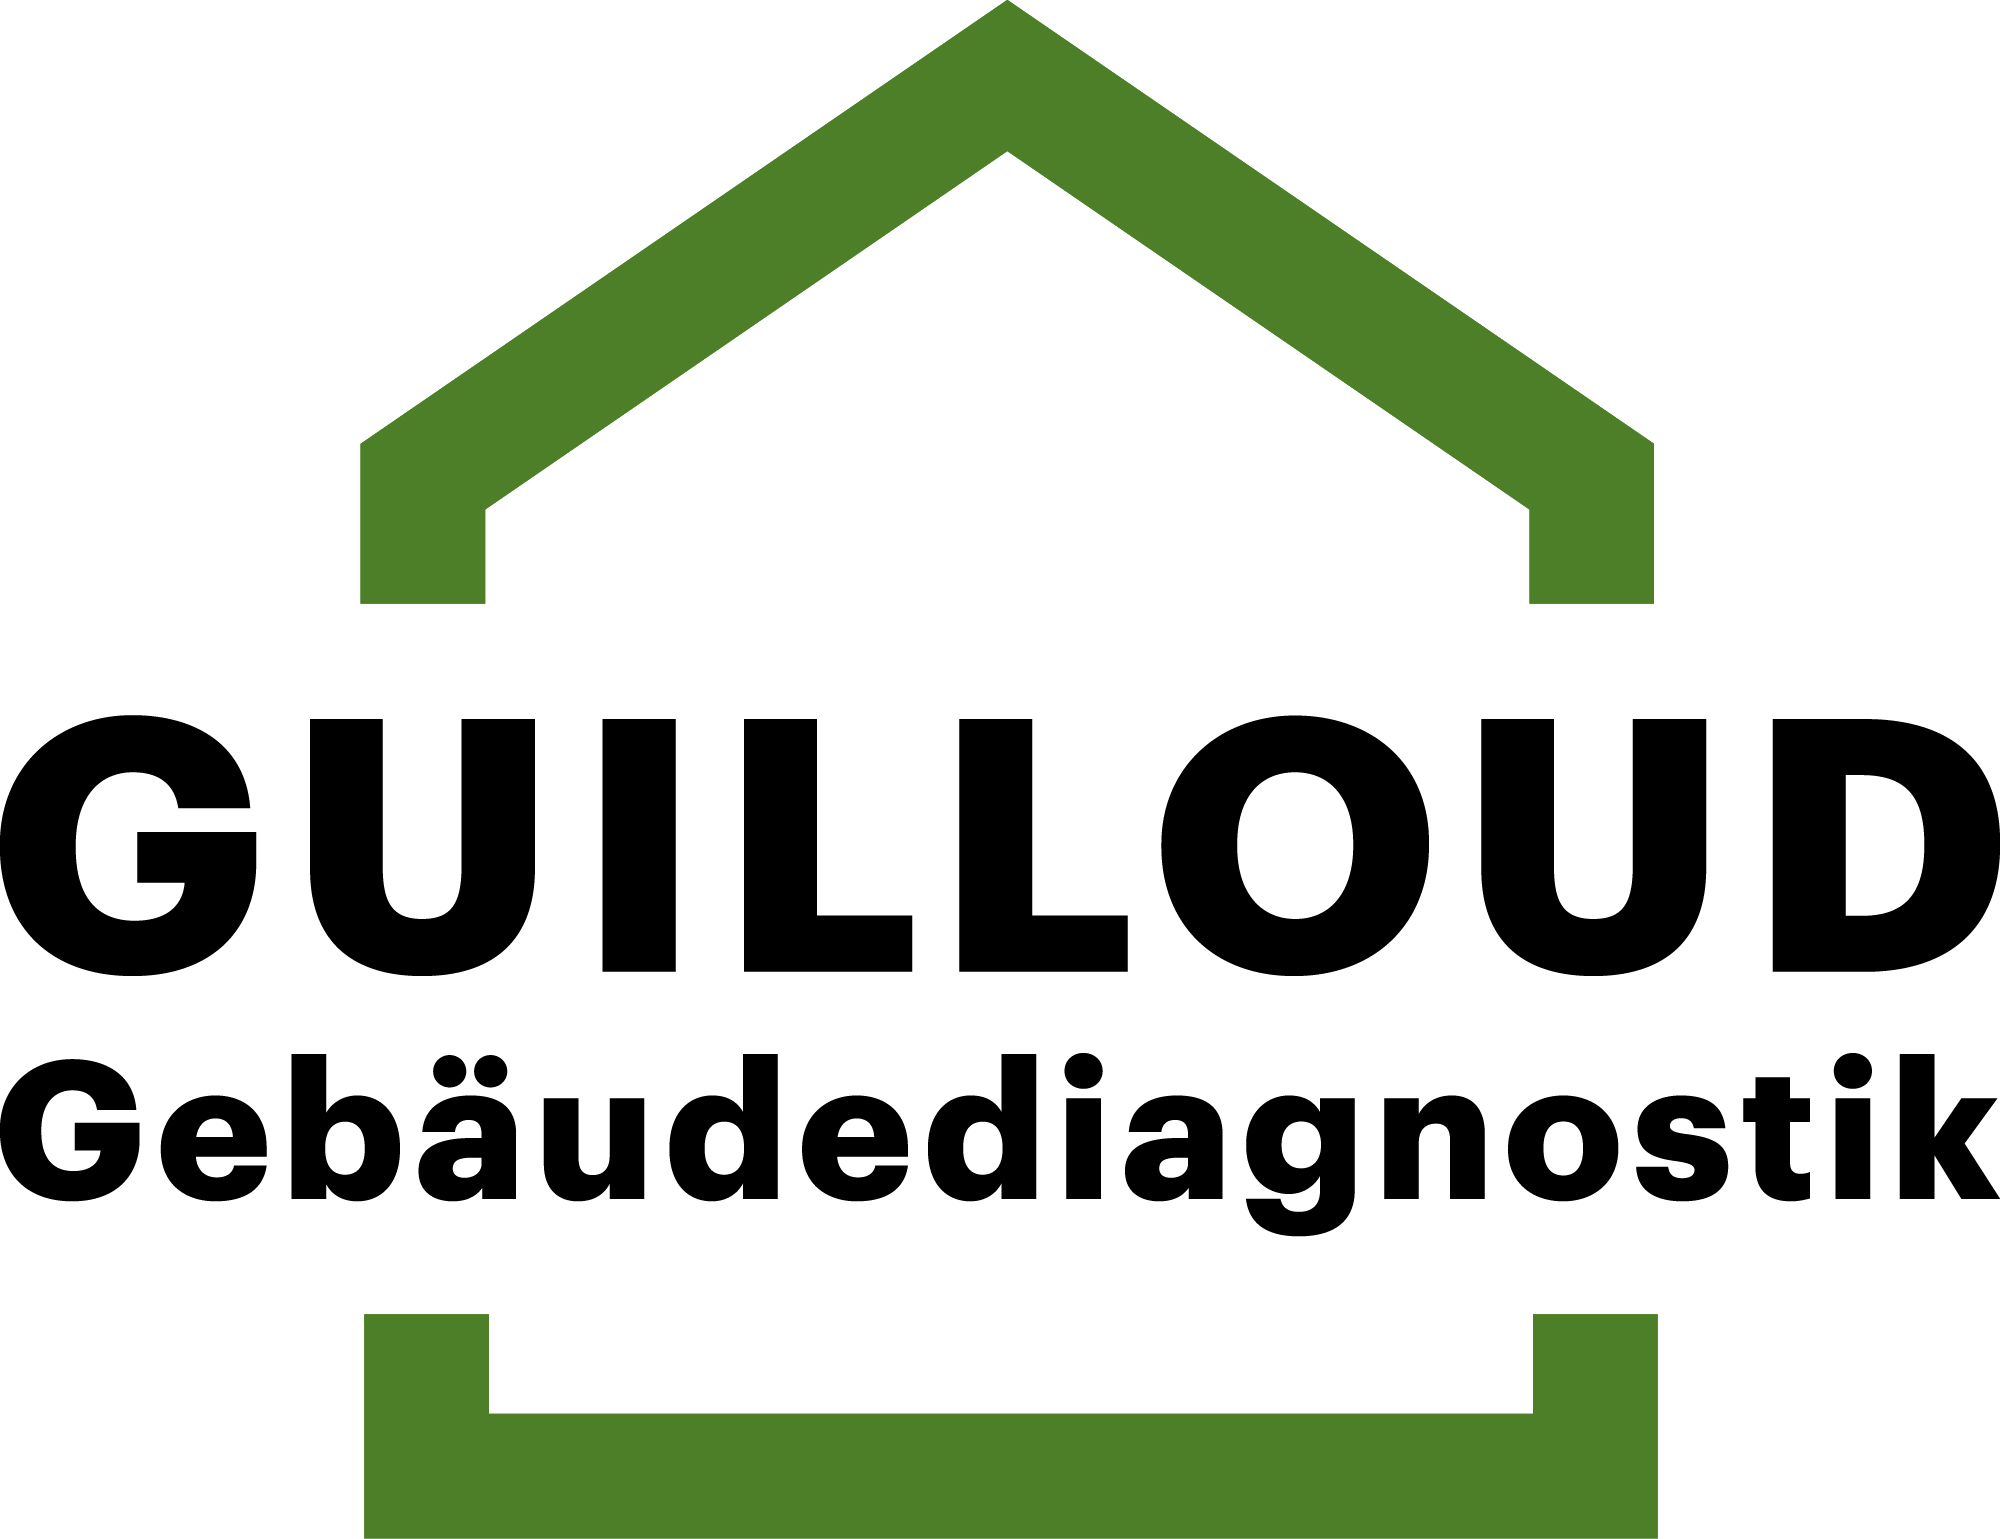 Guilloud